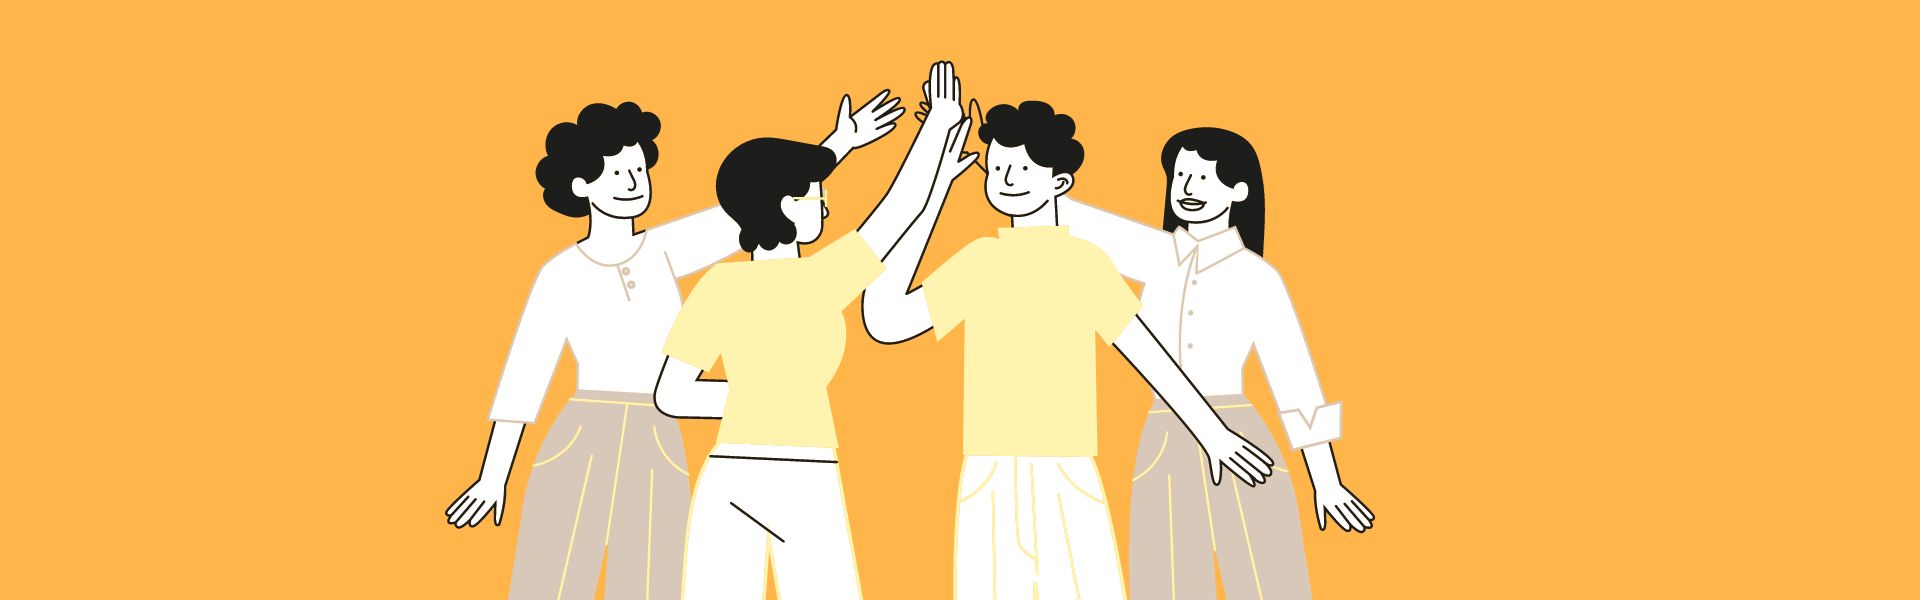 Neljä piirrettyä hahmoa lyö kädet yhteen onnistumisen merkiksi.